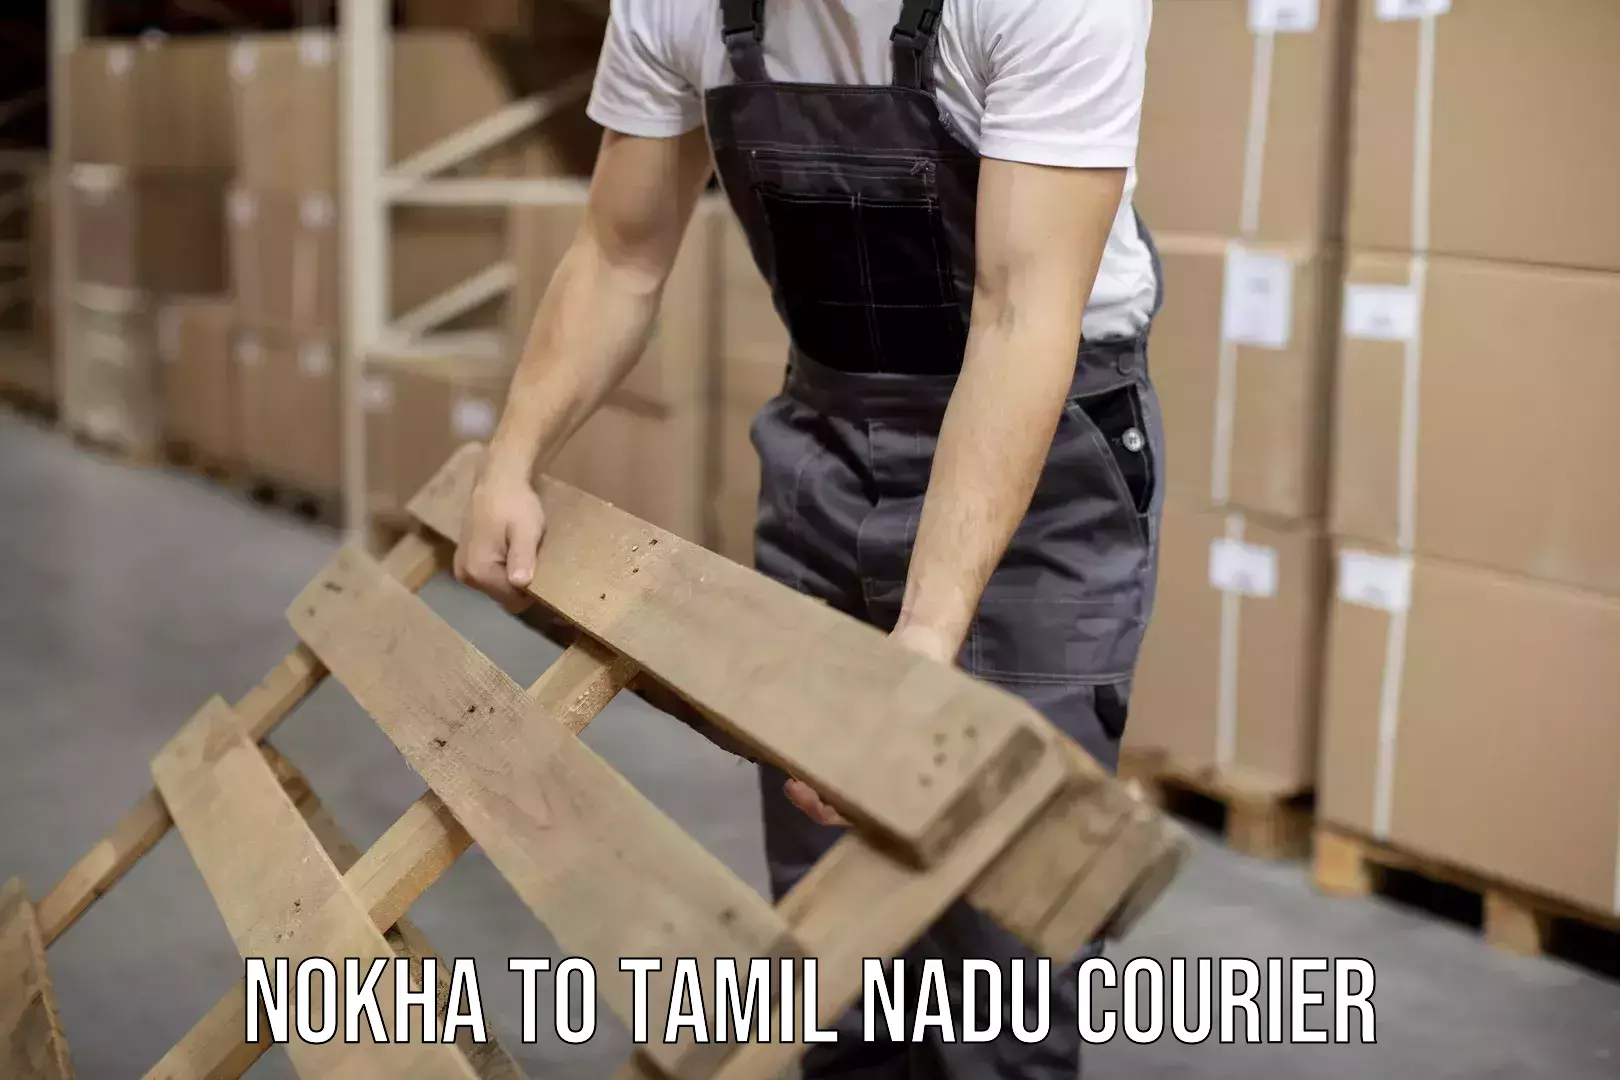 Cash on delivery service Nokha to Tamil Nadu